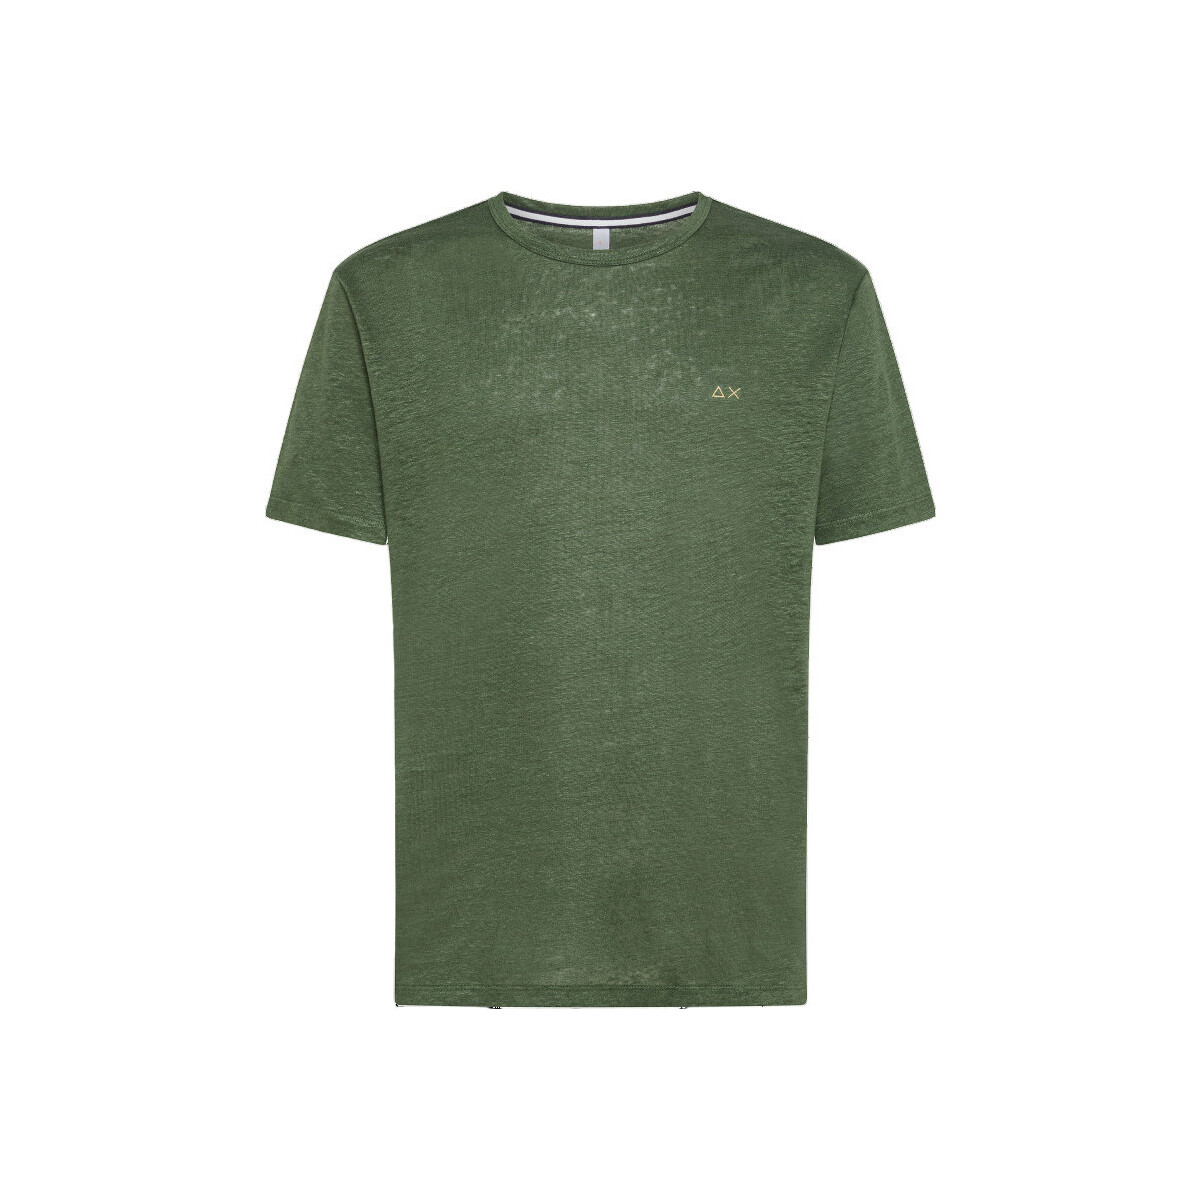 Vêtements Homme T-shirts manches courtes Sun68 T34132 Vert